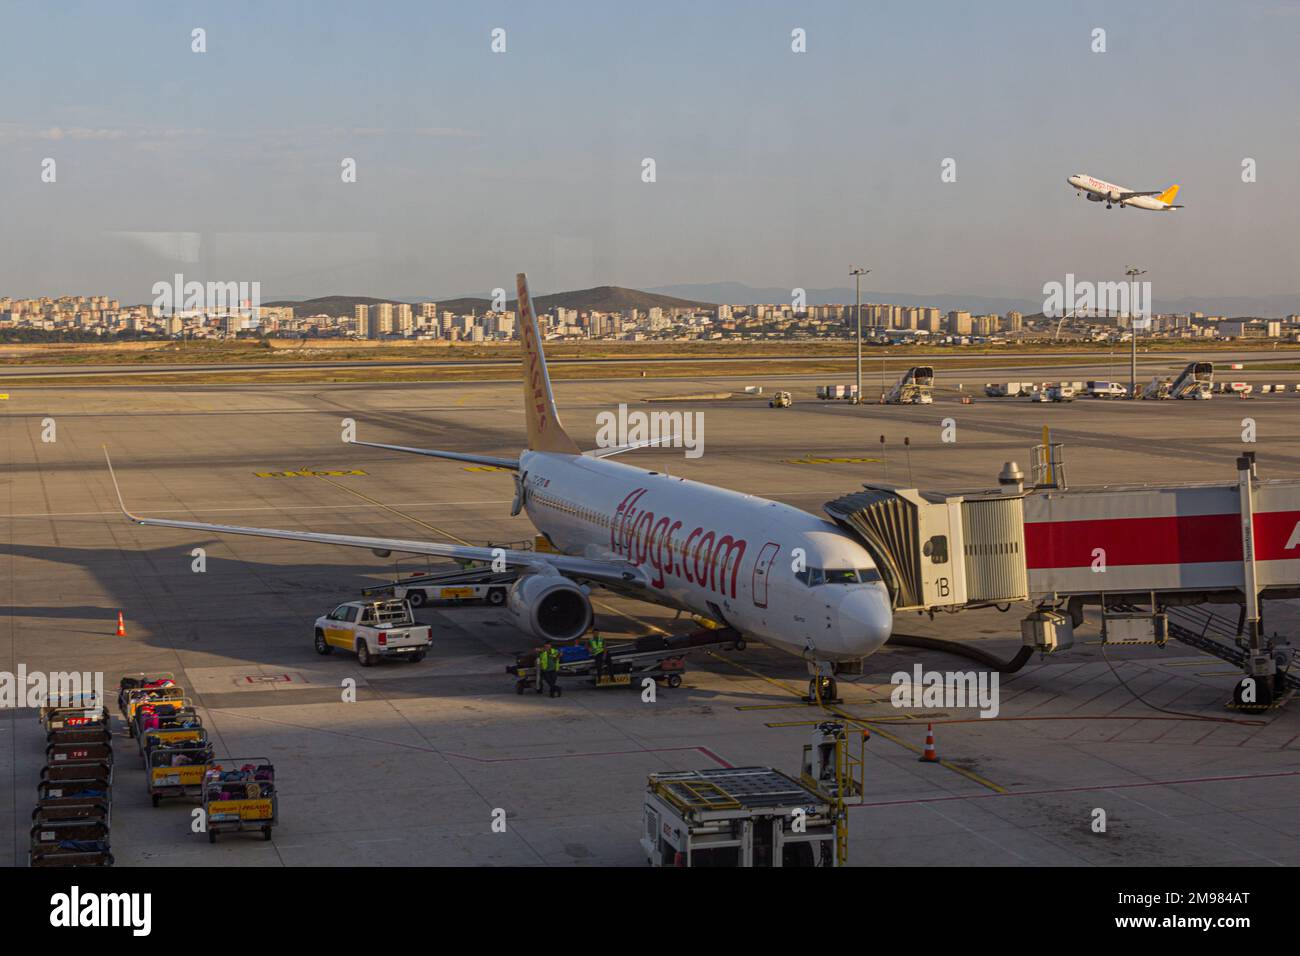 ISTANBUL, TURQUIE - 4 JUILLET 2019 : avion Boeing 737 de Pegasus Airlines à l'aéroport international Sabiha Gokcen d'Istanbul, Turquie Banque D'Images